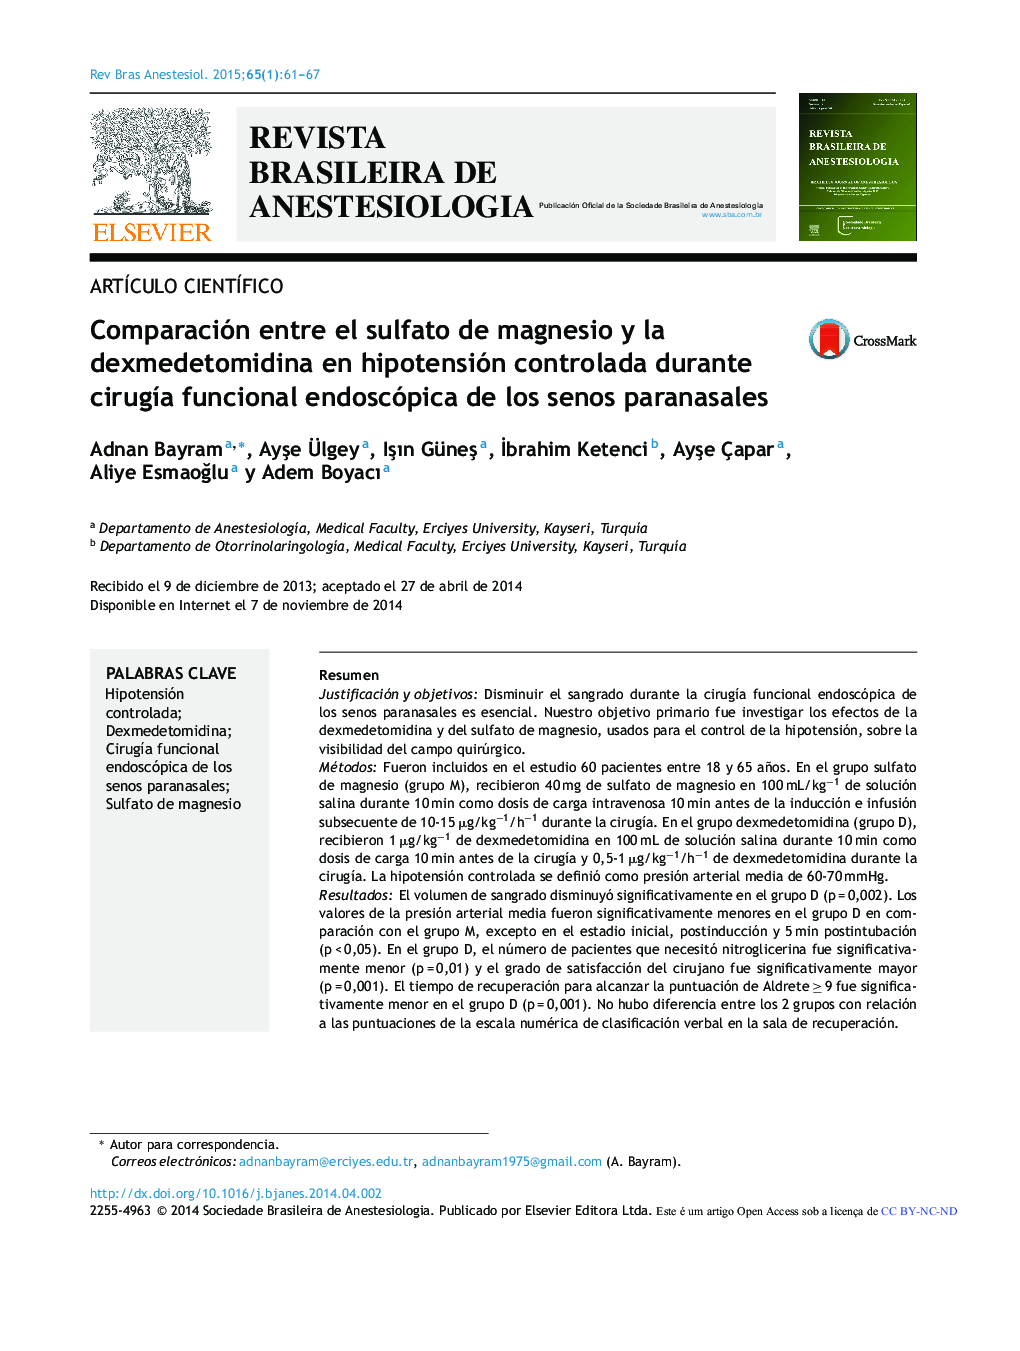 Comparación entre el sulfato de magnesio y la dexmedetomidina en hipotensión controlada durante cirugía funcional endoscópica de los senos paranasales